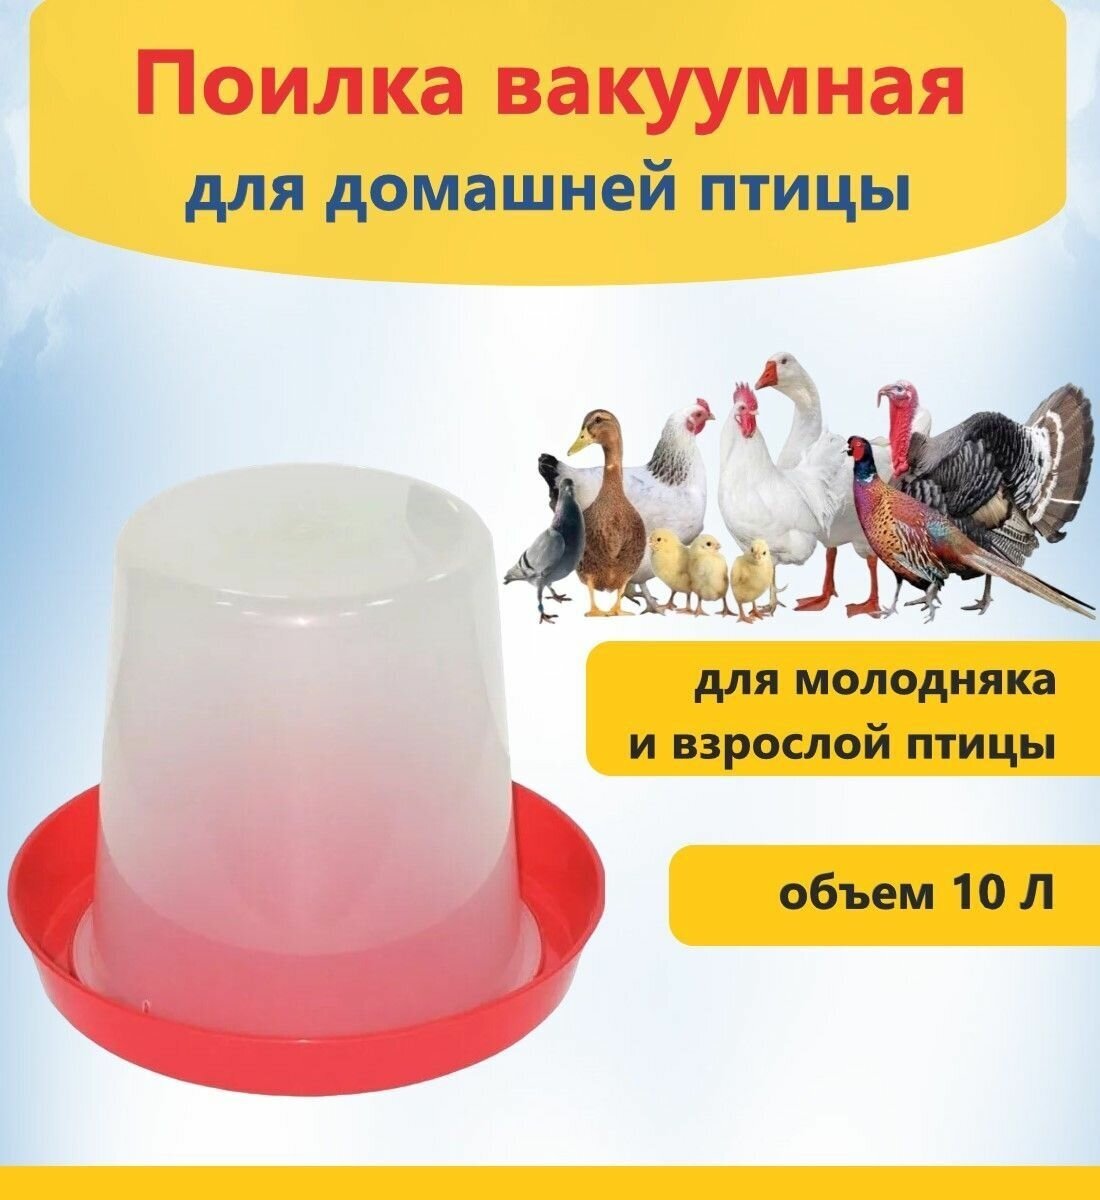 Поилка для домашней птицы объём 10 литров, вакуумная поилка подойдет для выращивания молодняка или взрослой птицы